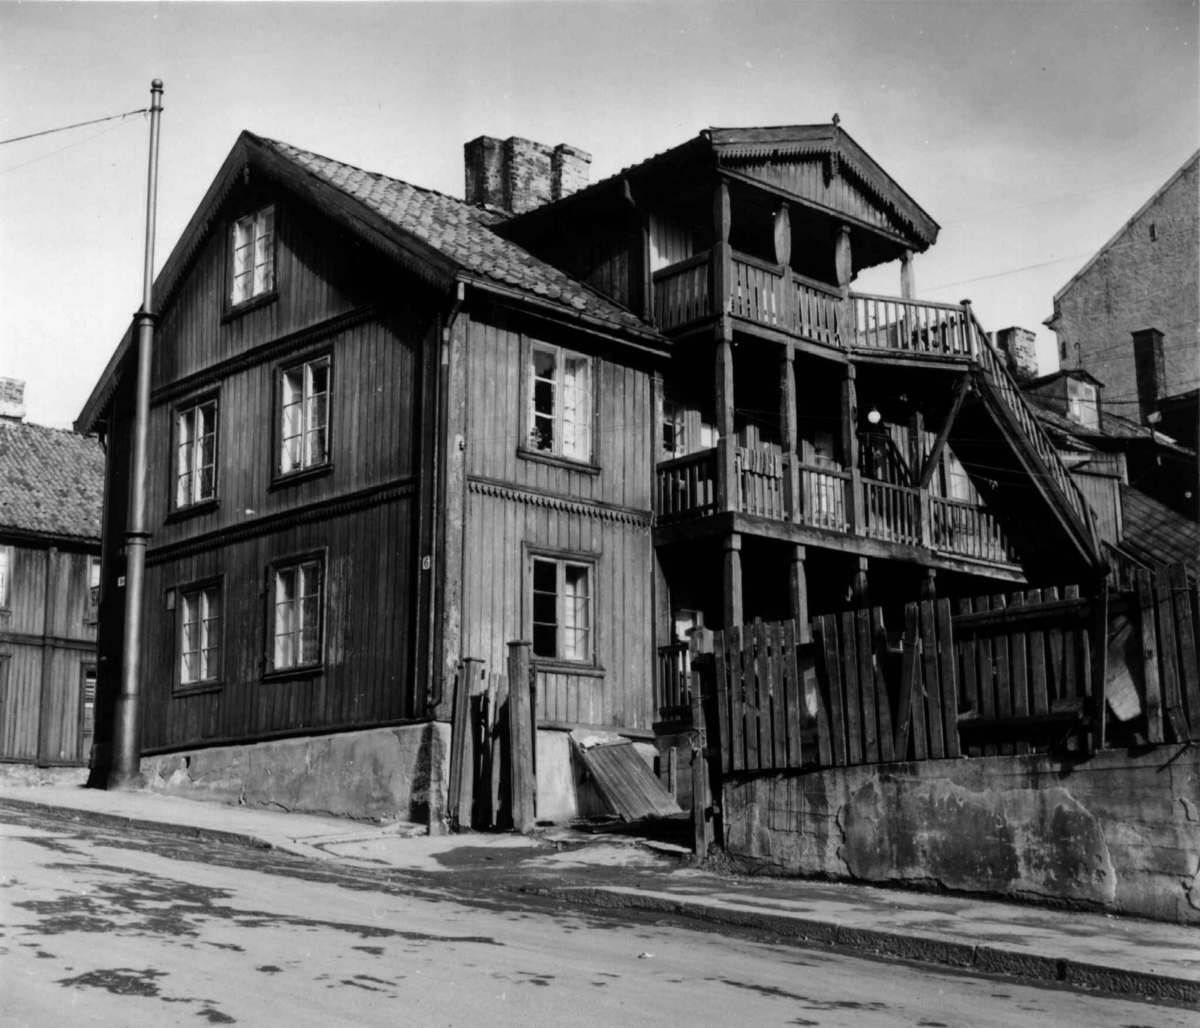 Øvre gate 6, Oslo 1961. Mørkt trehus sett fra gata, med verandaer, utvendig trapp og gjerde.